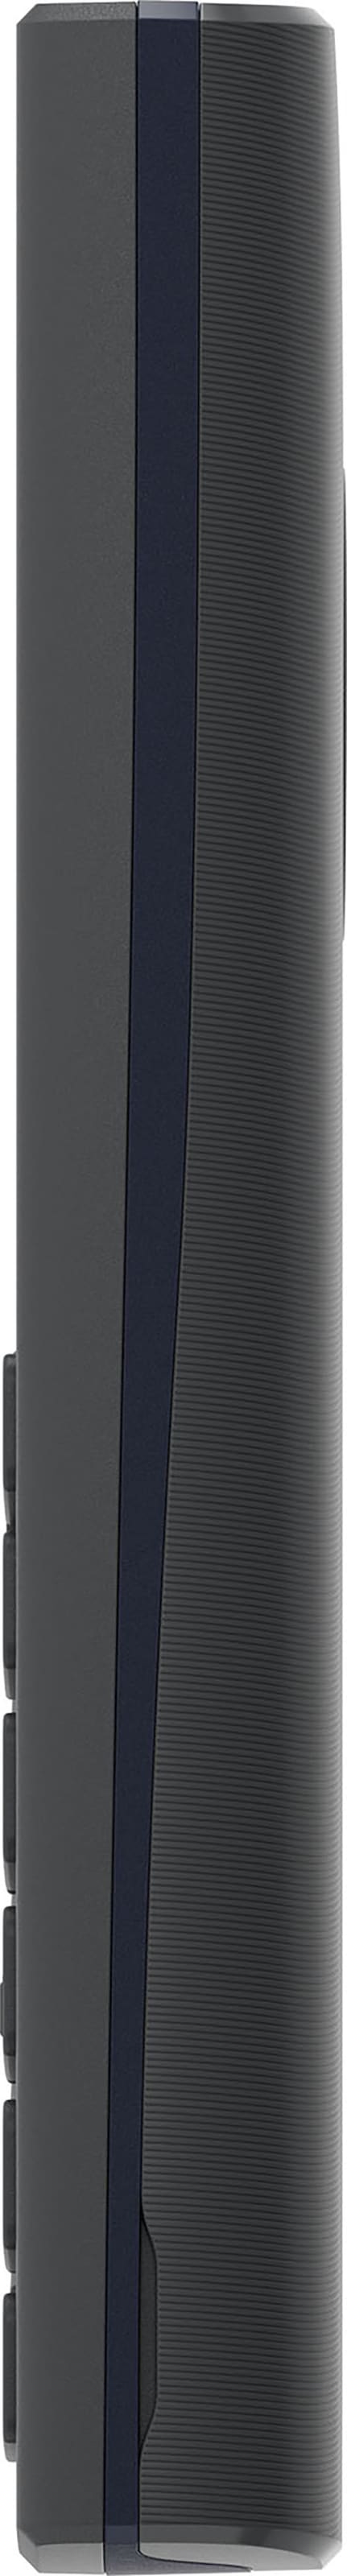 Nokia Handy »110 2G (2023)«, Charcoal, 4,5 cm/1,77 Zoll, 0,02 GB  Speicherplatz ➥ 3 Jahre XXL Garantie | UNIVERSAL